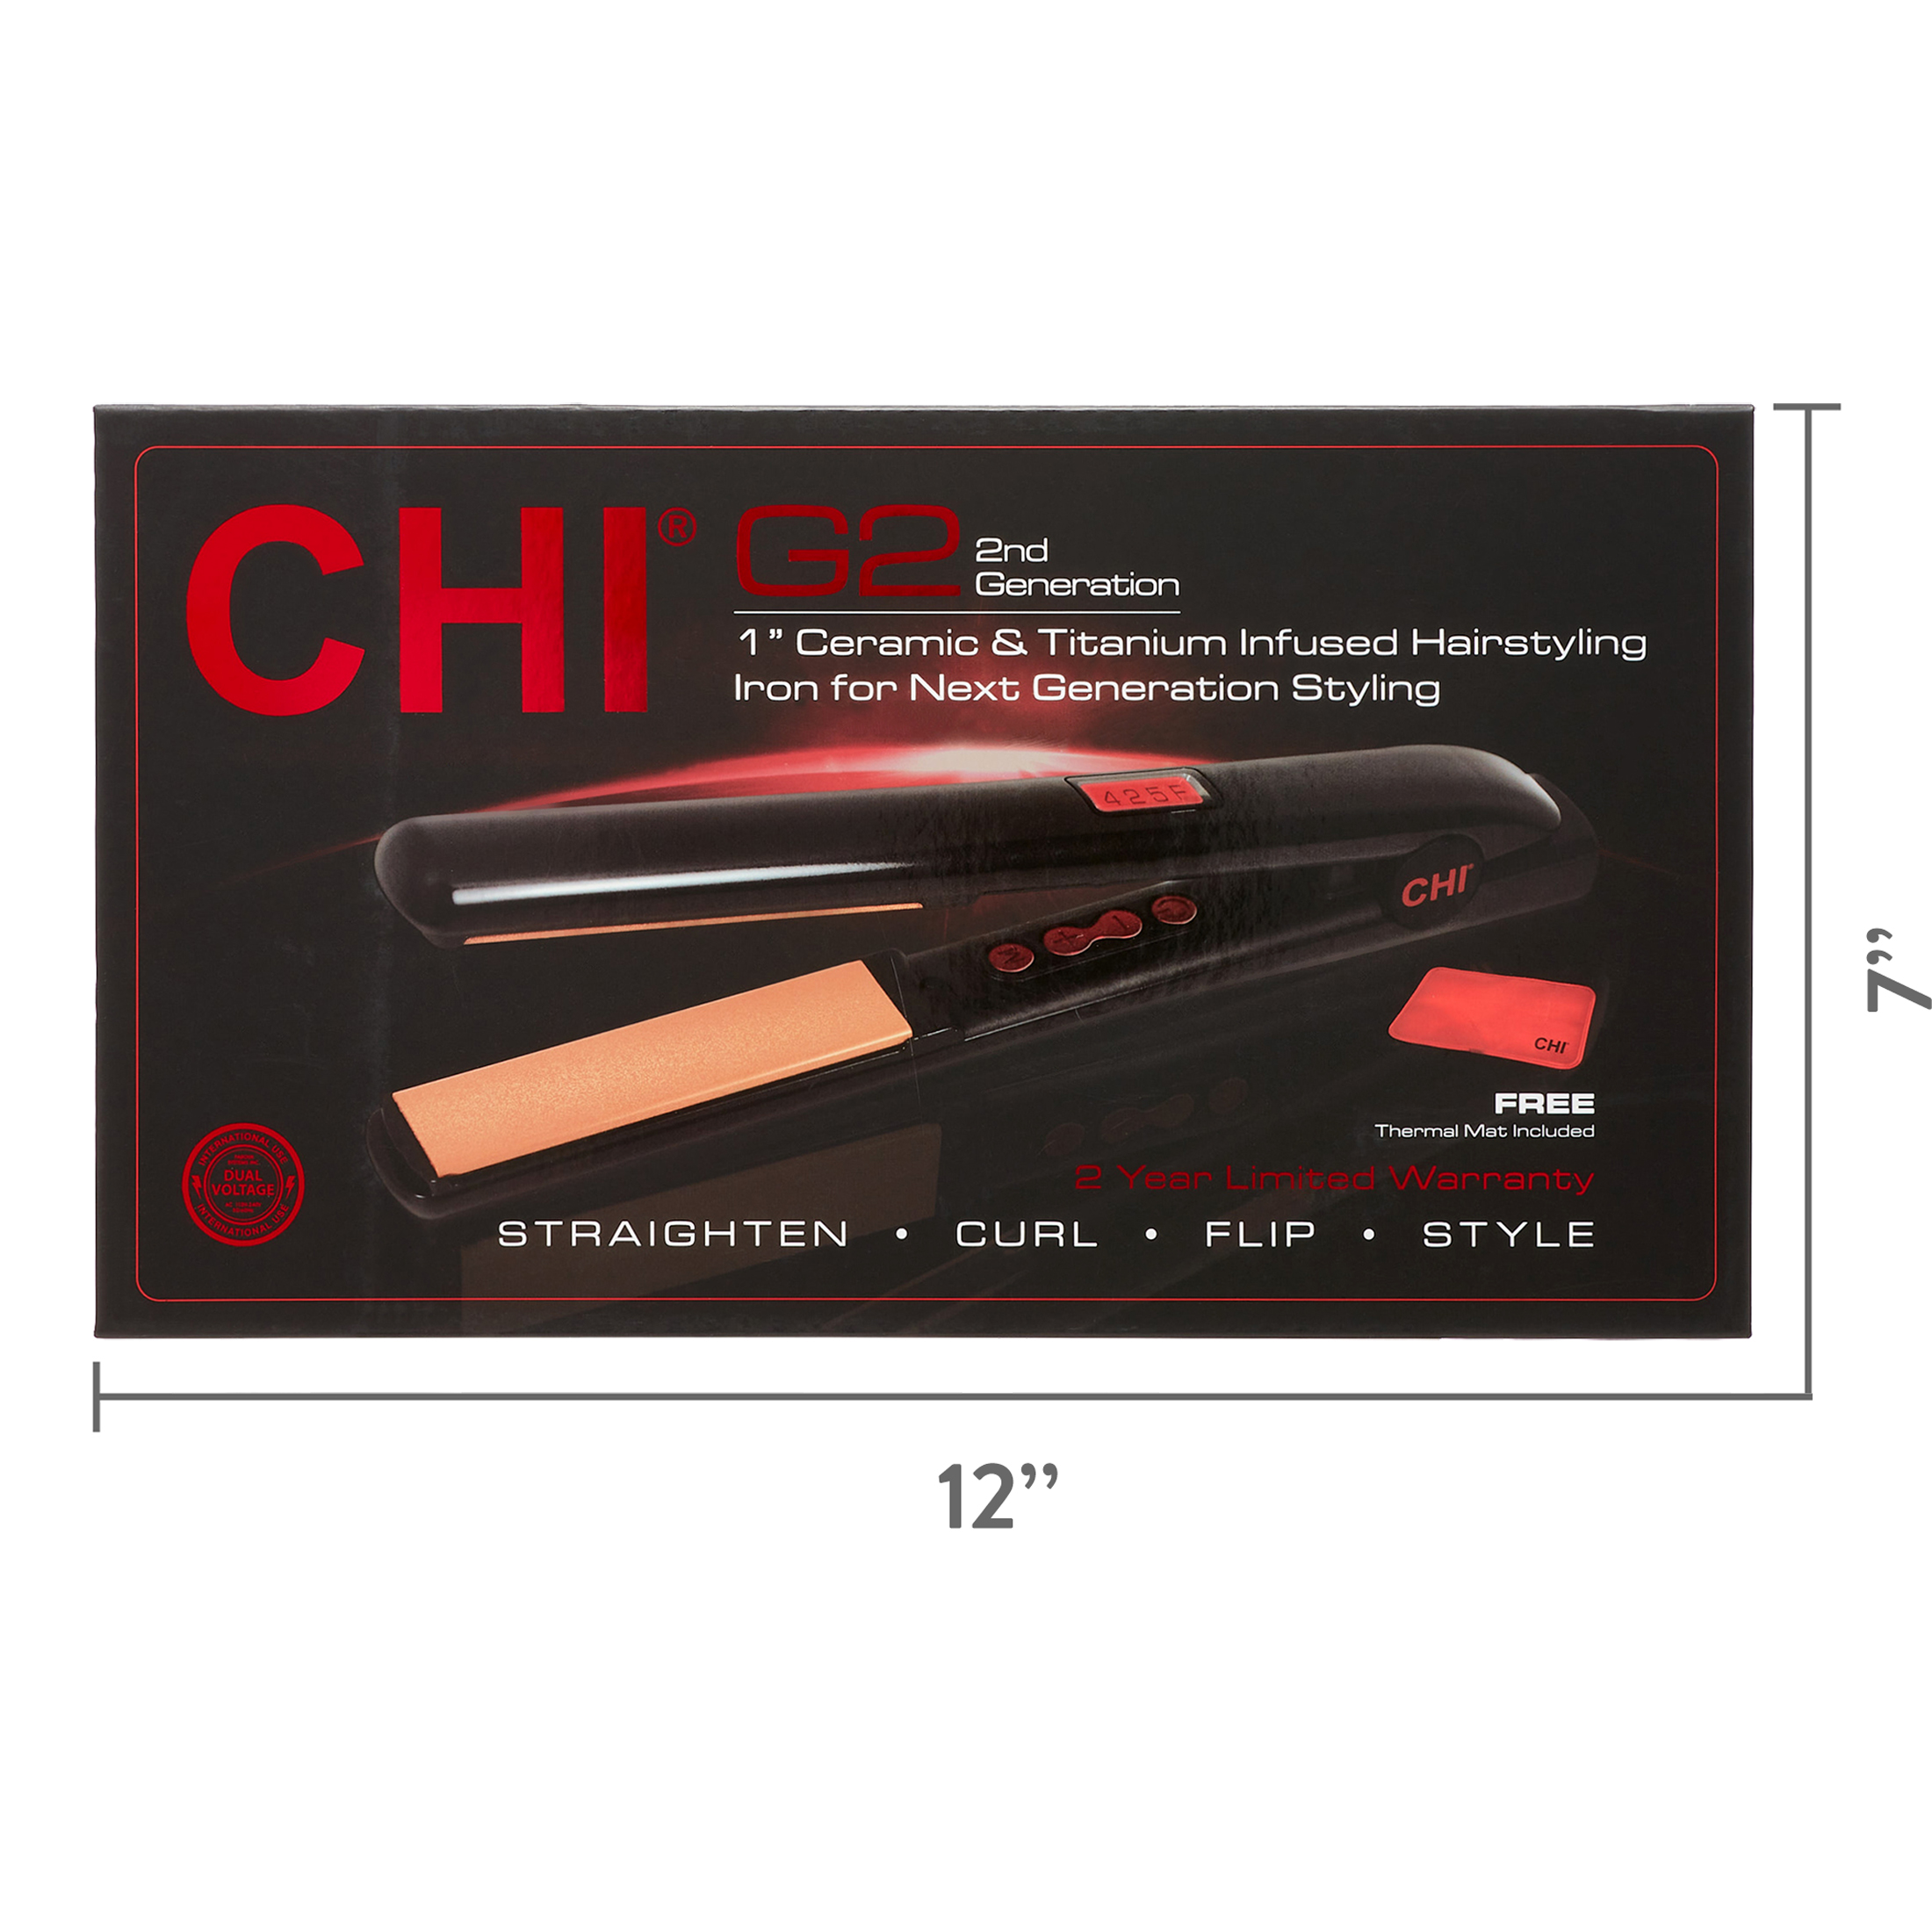 CHI G2 1" Ceramic & Titanium Infused Professional Flat Iron - image 4 of 10